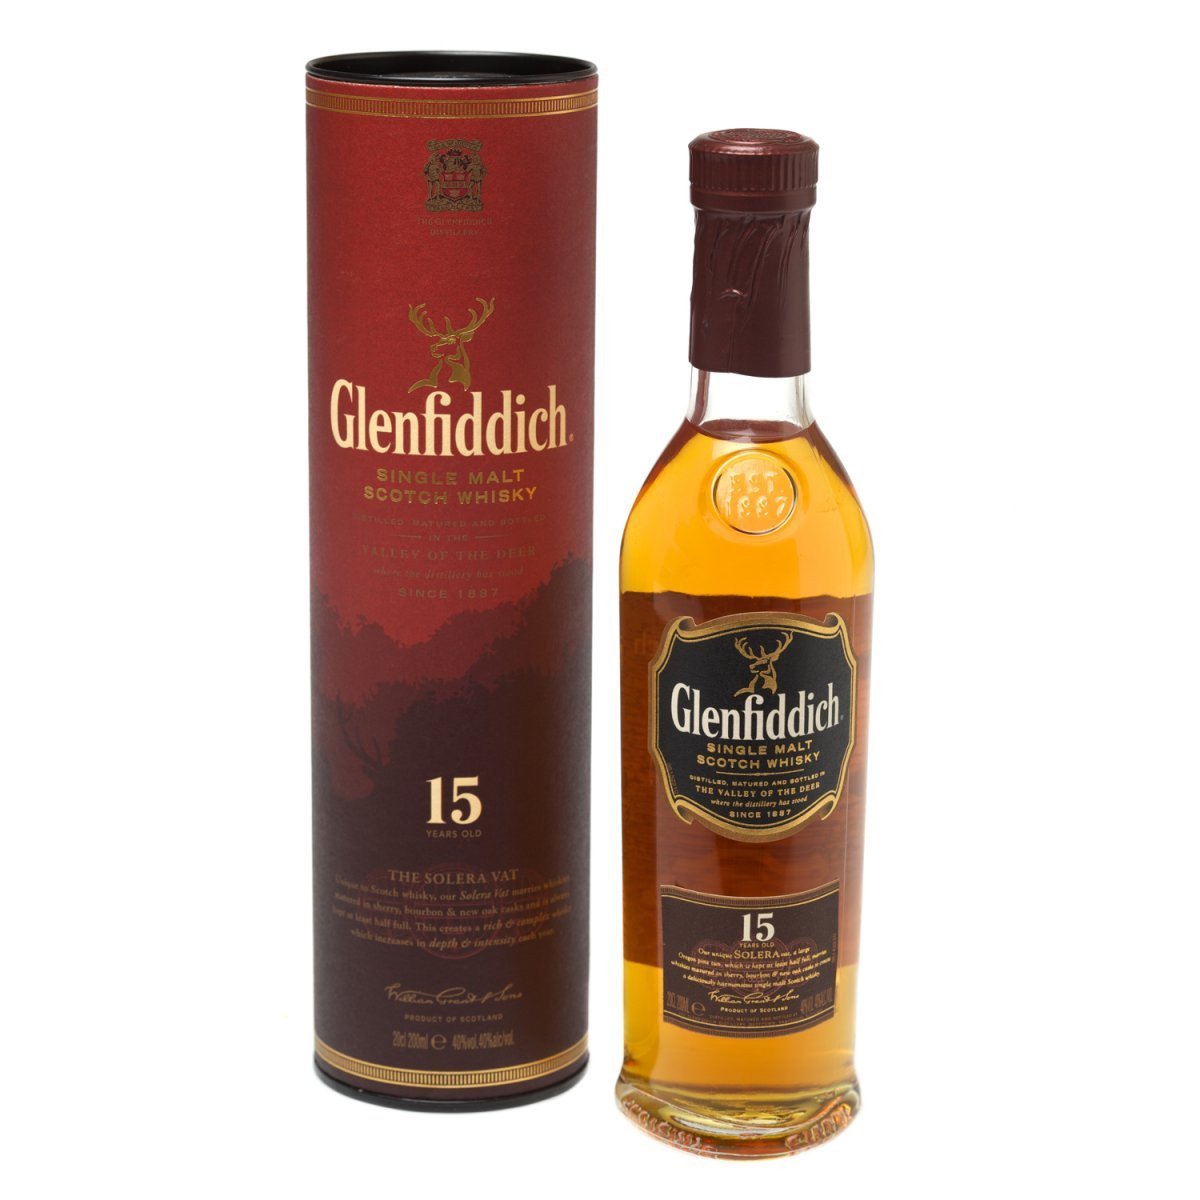 Glenfiddich Single Malt Scotch Whisky 26yr 750ml